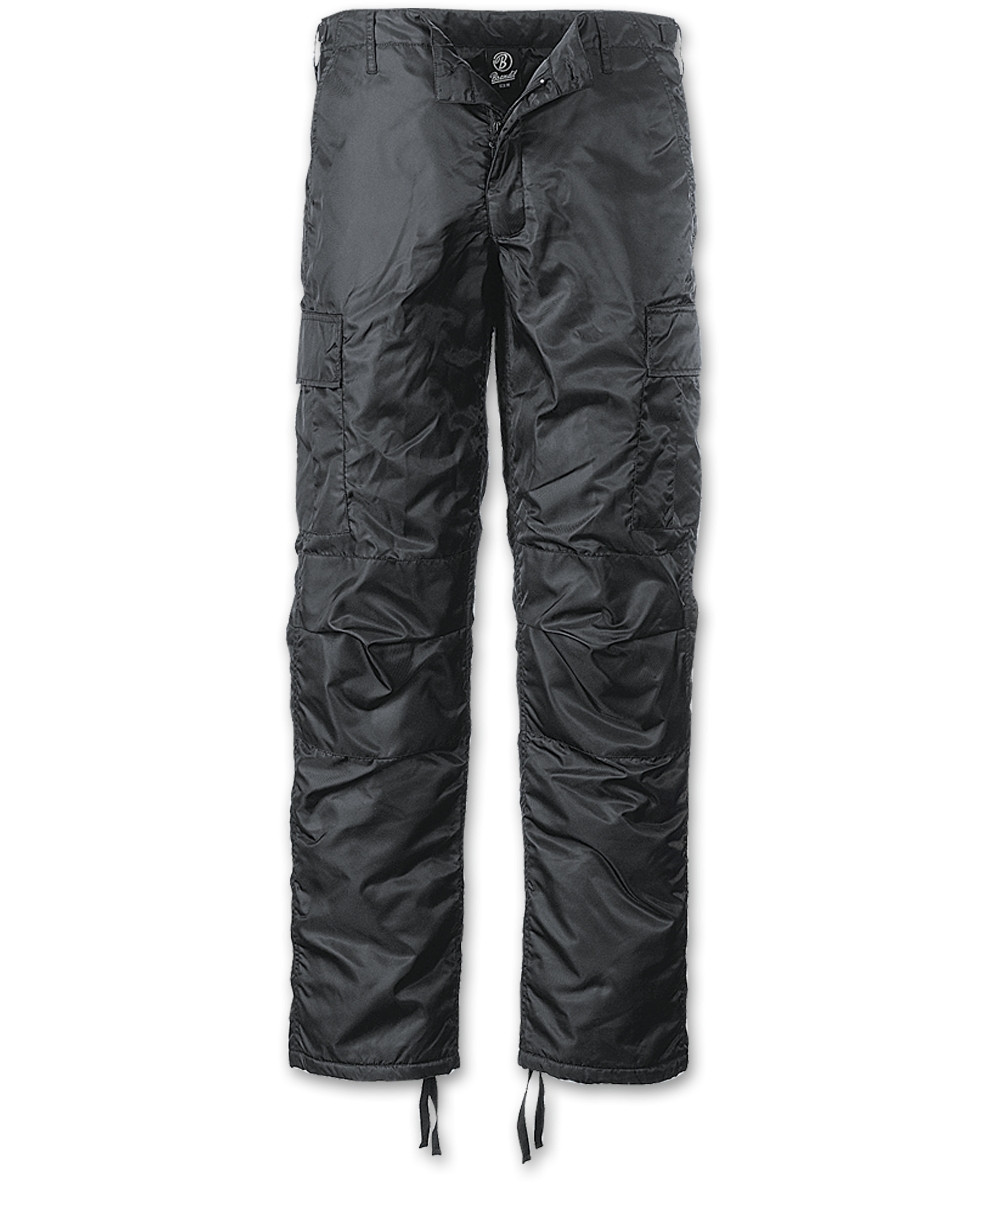 Kalhoty Brandit MA1 Thermo - černé, XL